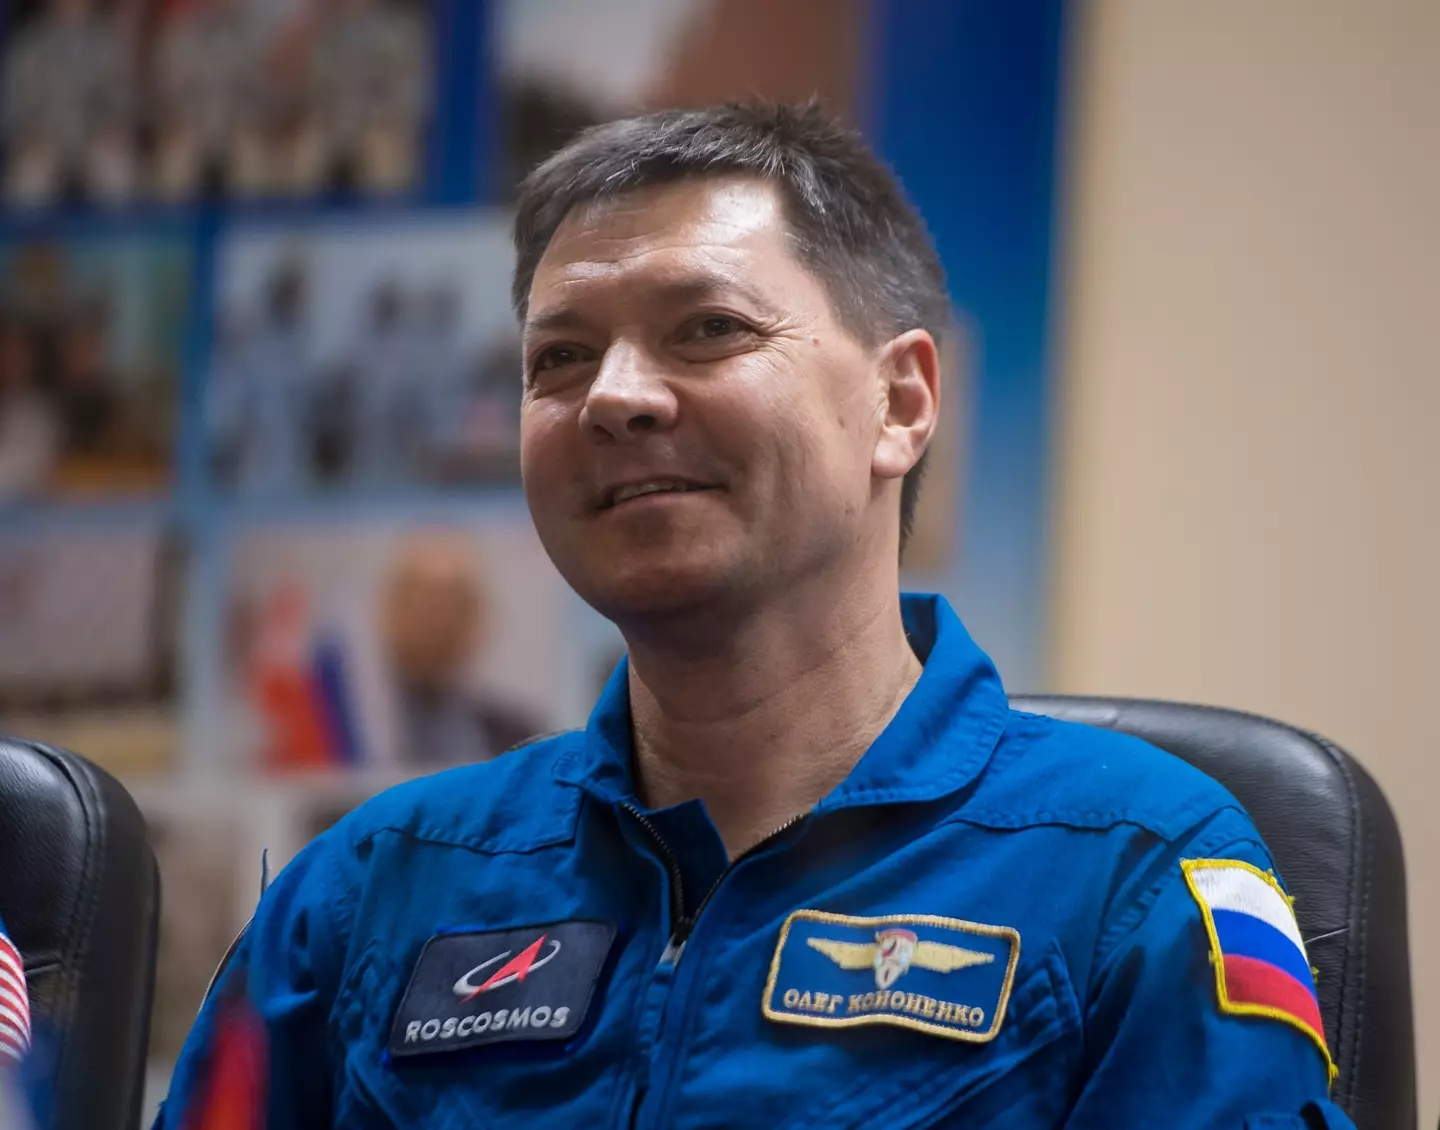 The cosmonaut has now broken a major space record (Aubrey Gemignani/NASA via Getty Images)